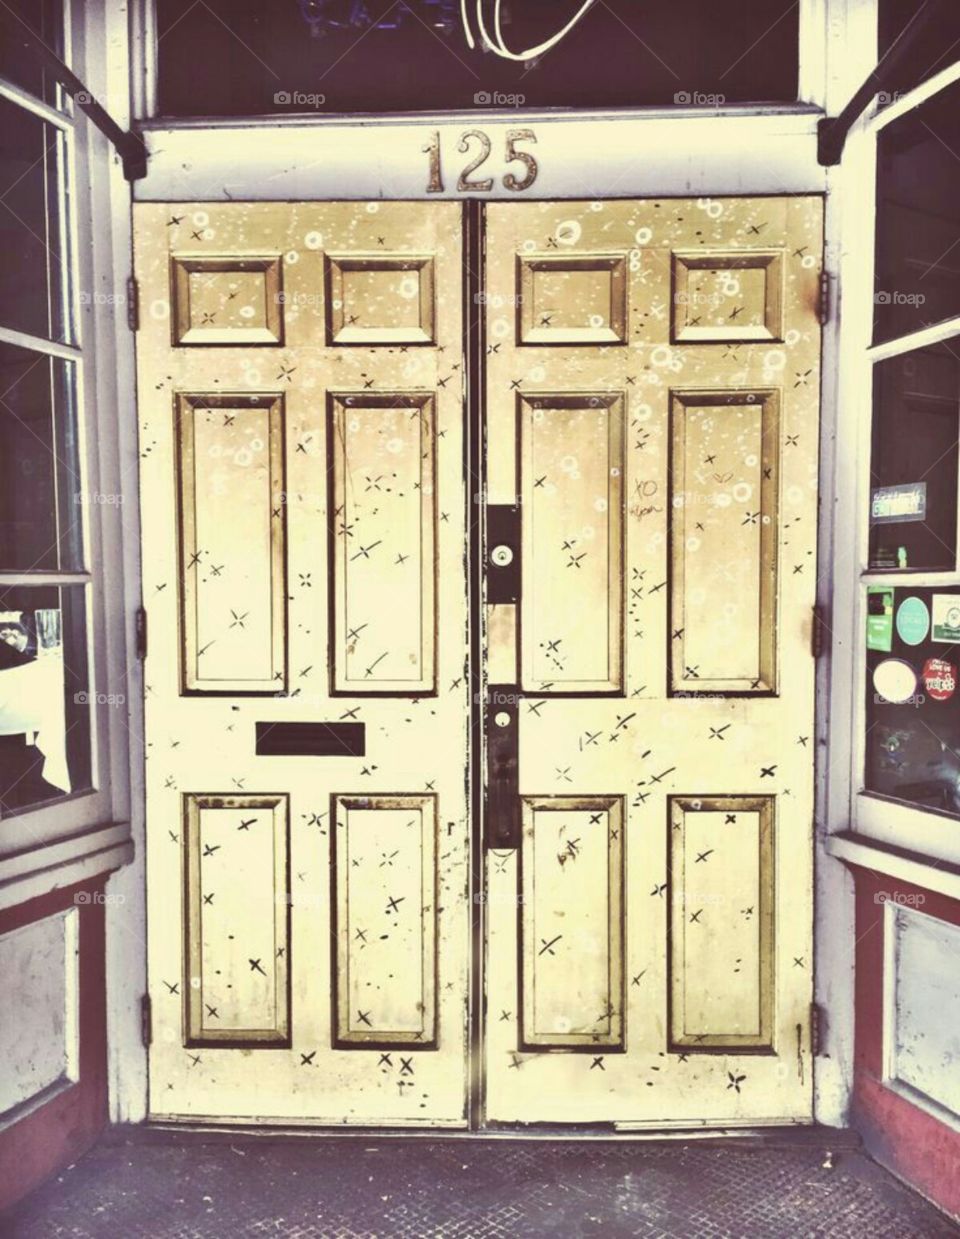 Doors at the XO Cafe